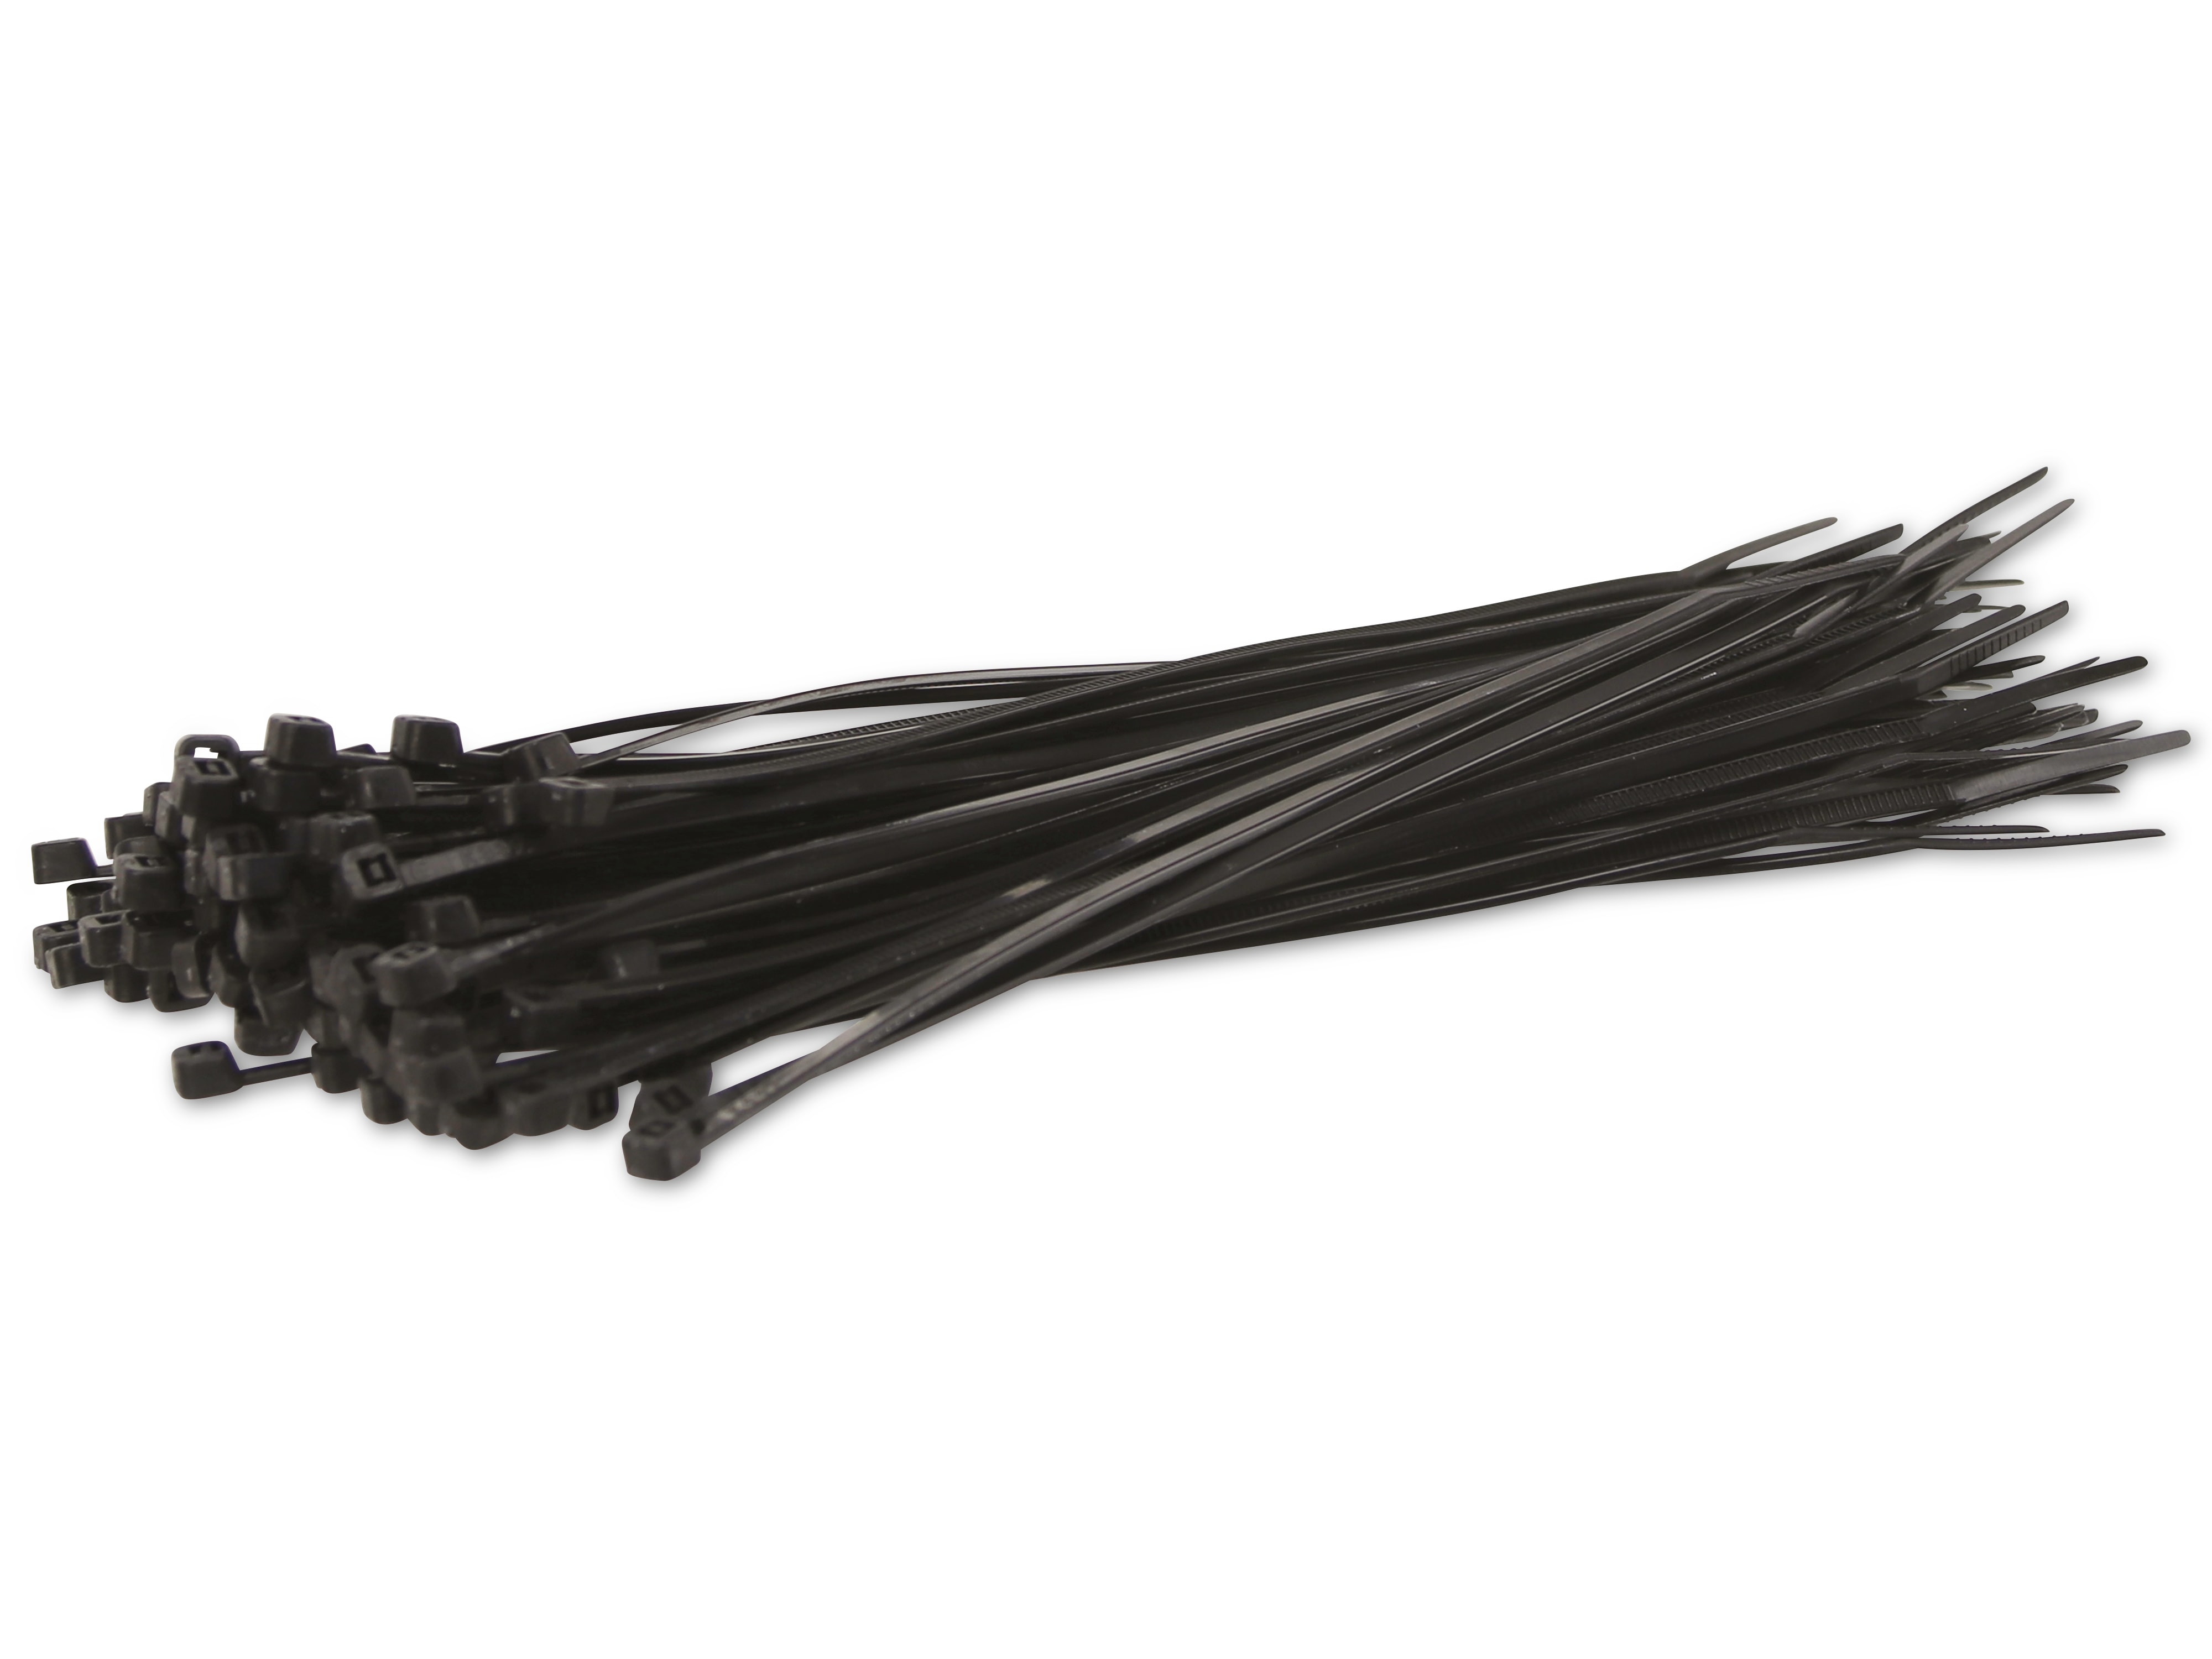 KSS Kabelbinder-Sortiment Polyamid 6.6, schwarz, 203x3,2, UV-beständig, 100 Stück